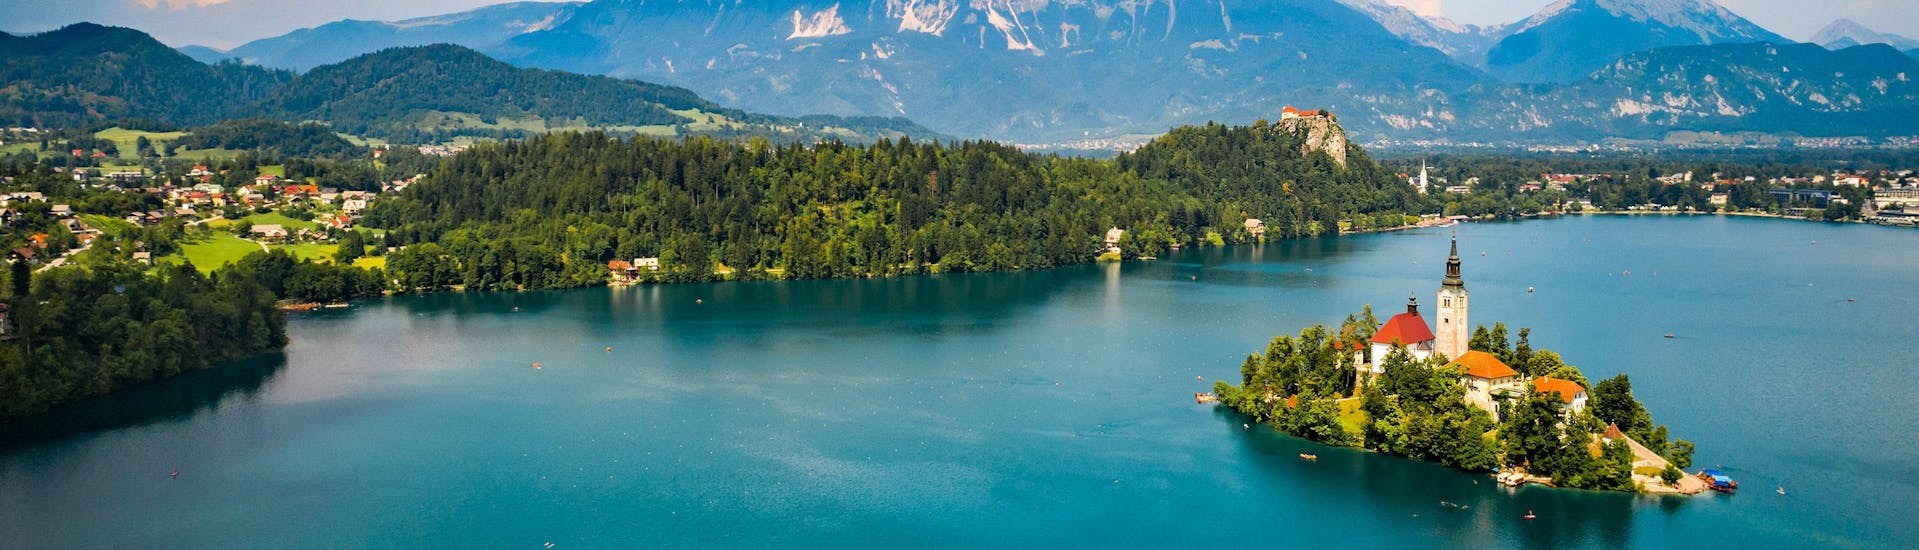 Blick auf den wunderschönen Bleder See, der ein beliebtes Ziel für das Paragliding ist.